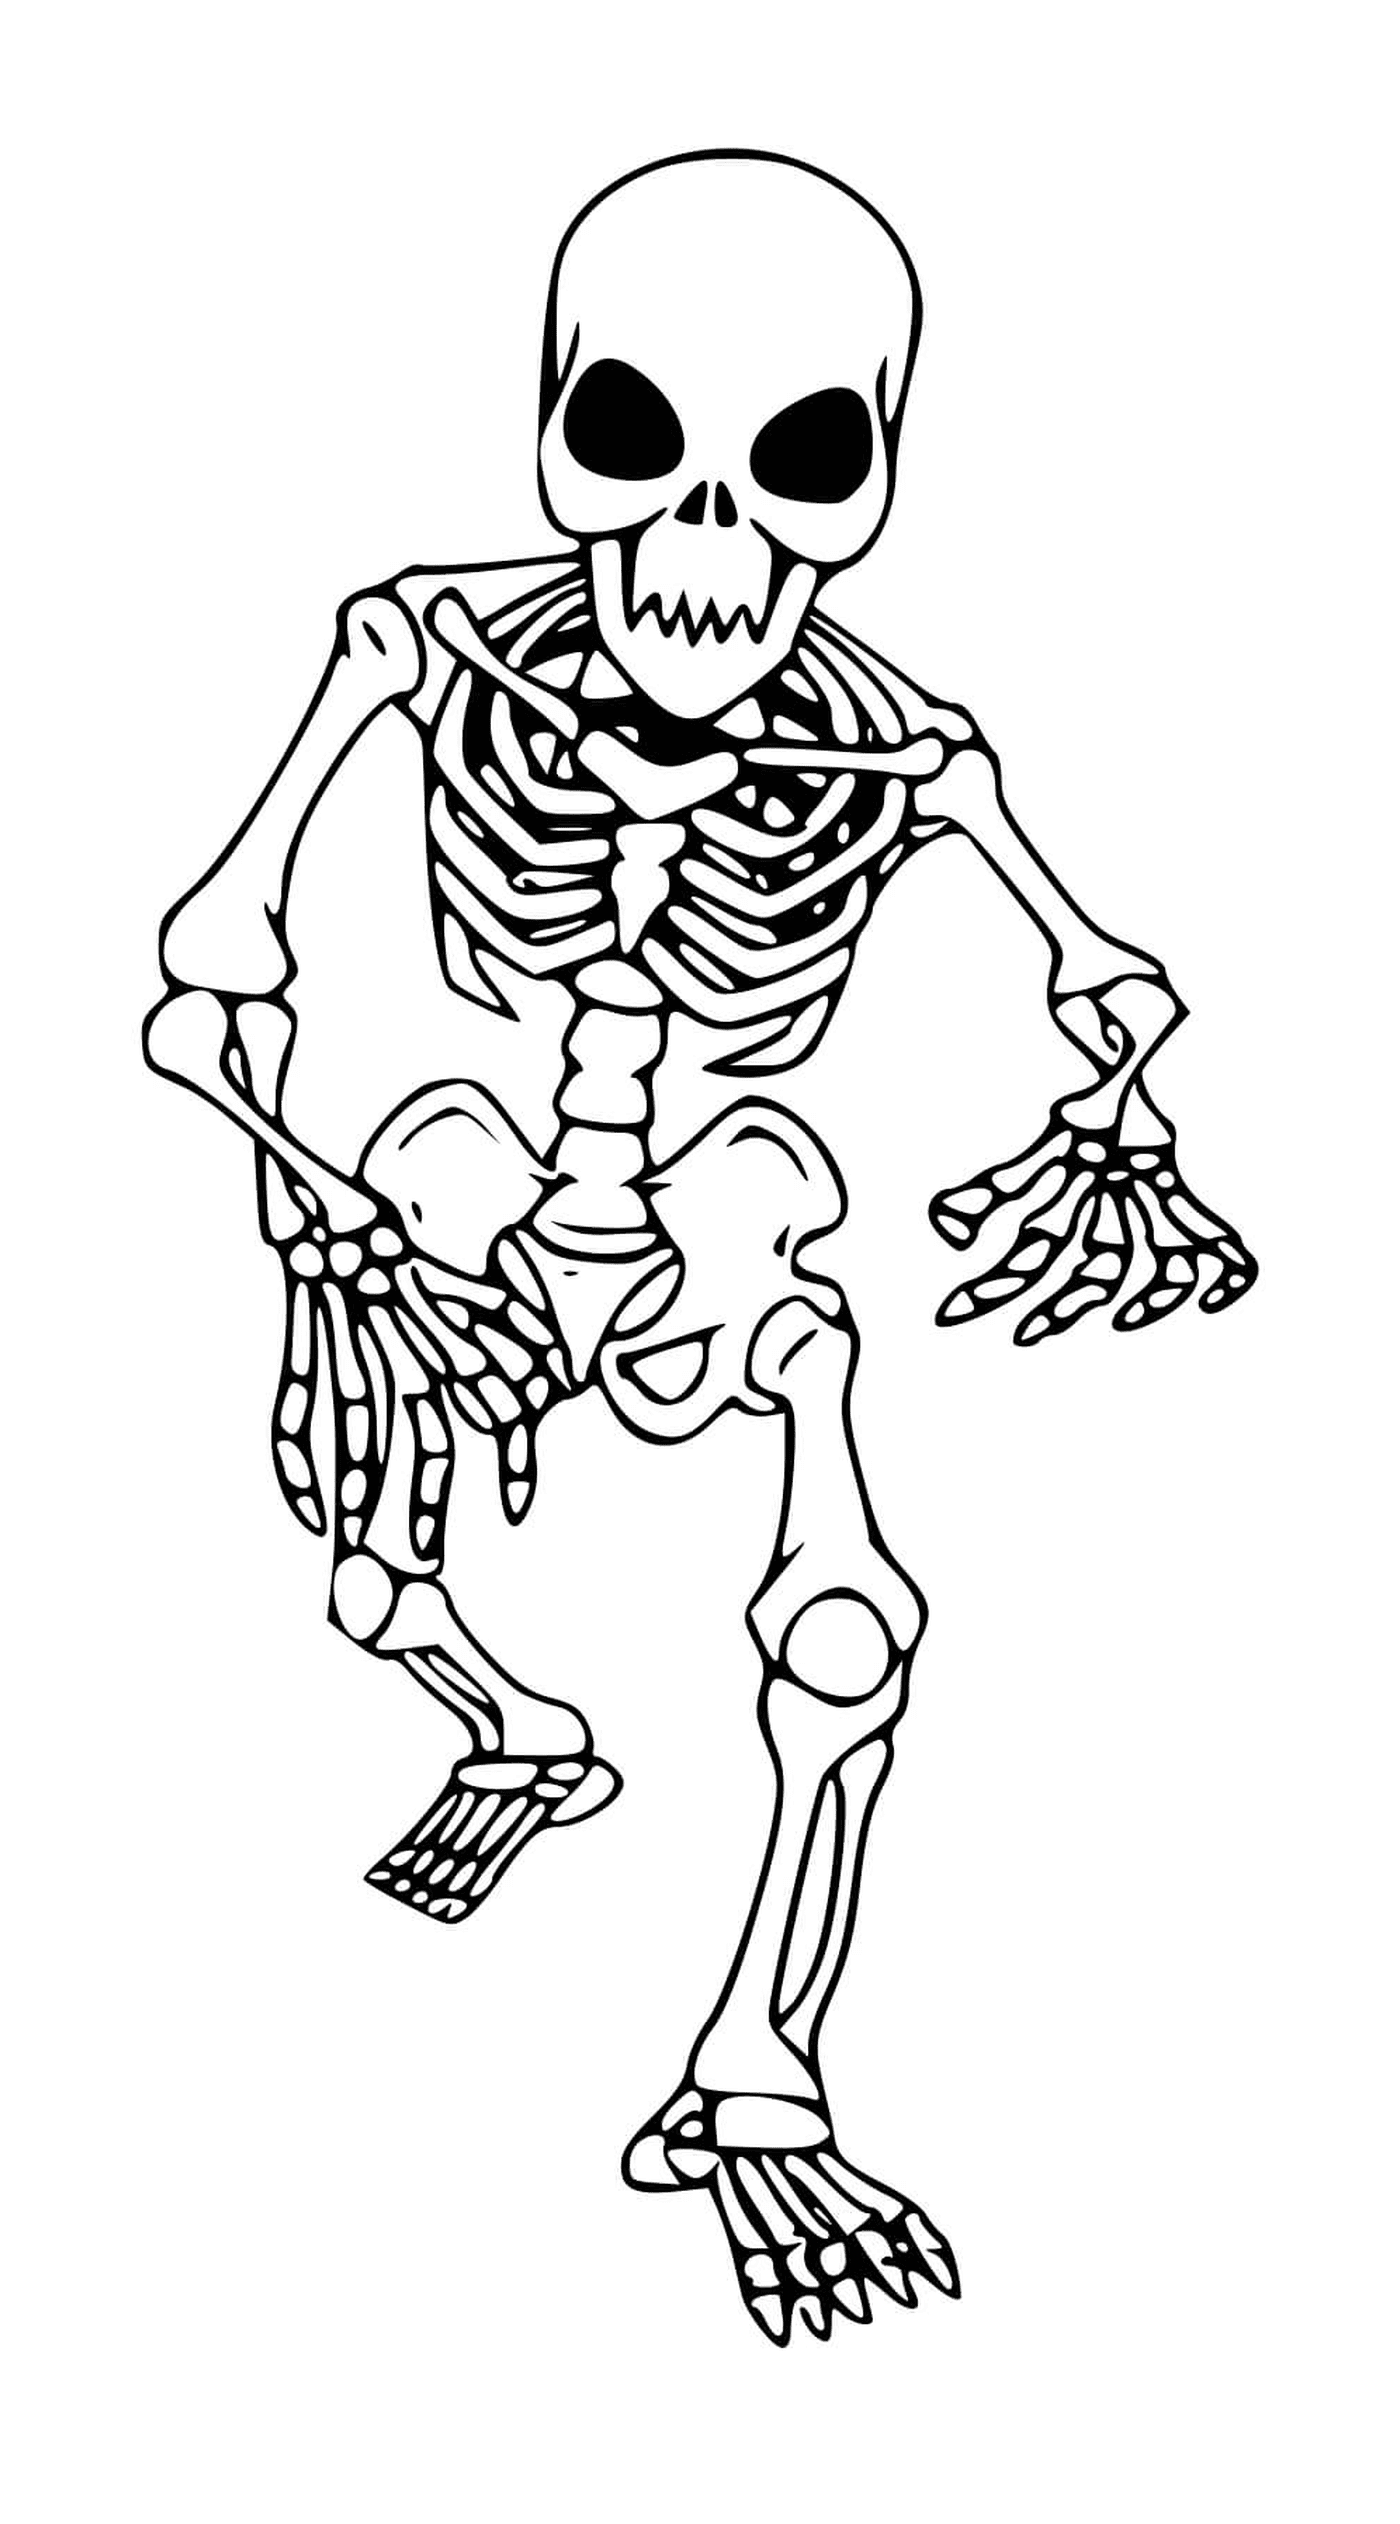  Esqueleto caminando para niños, sin cabeza 